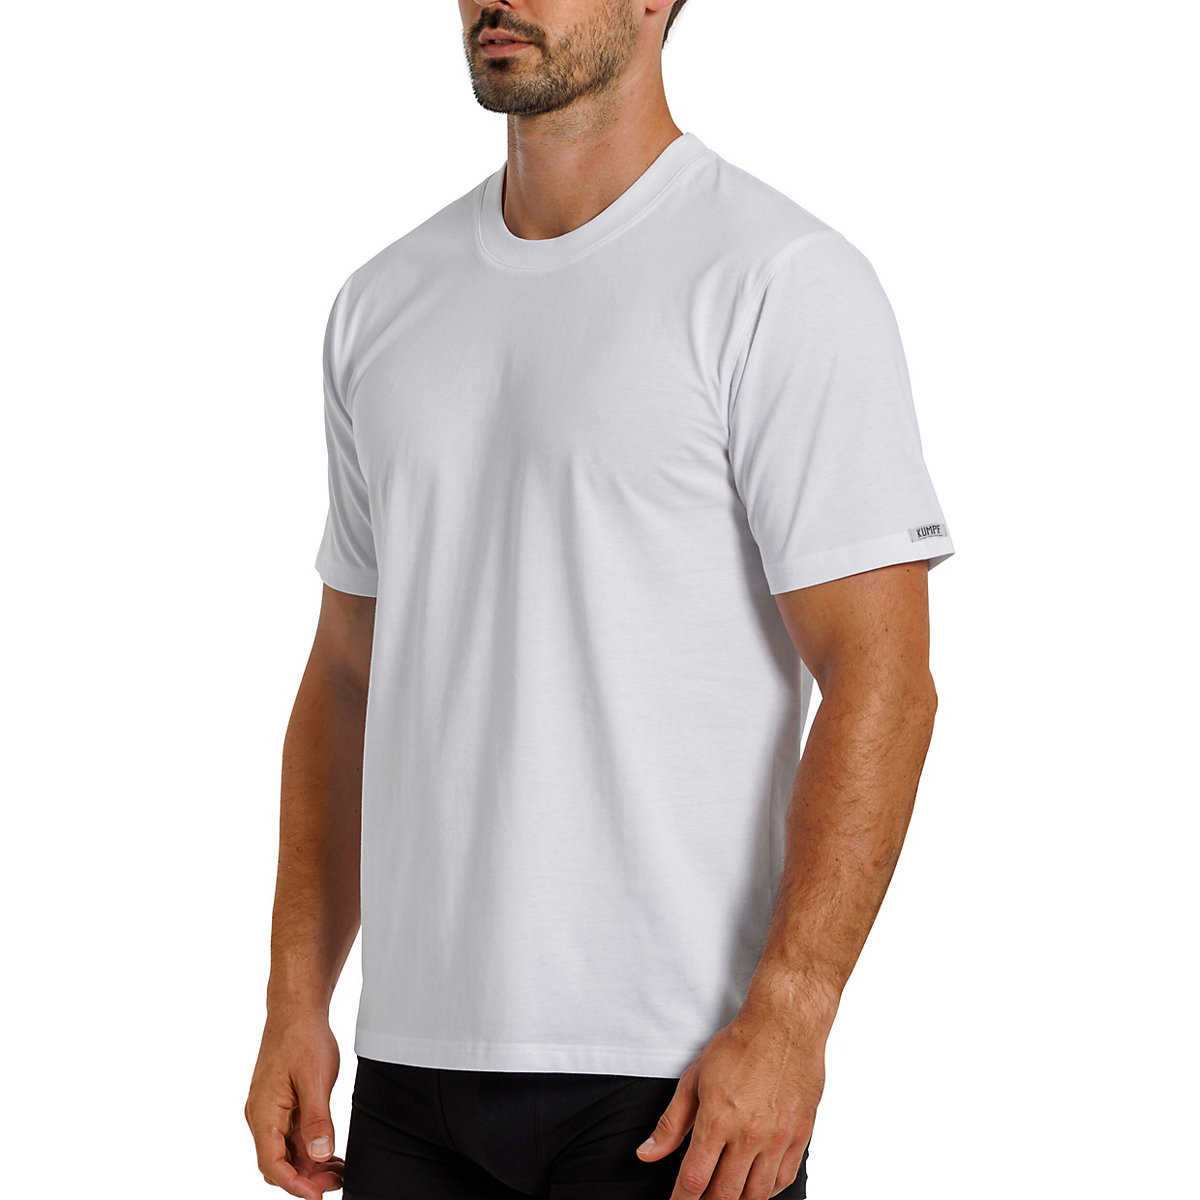 Kumpf Body Fashion 4er Sparpack Herren T-Shirt Bio Cotton Unterhemden weiß